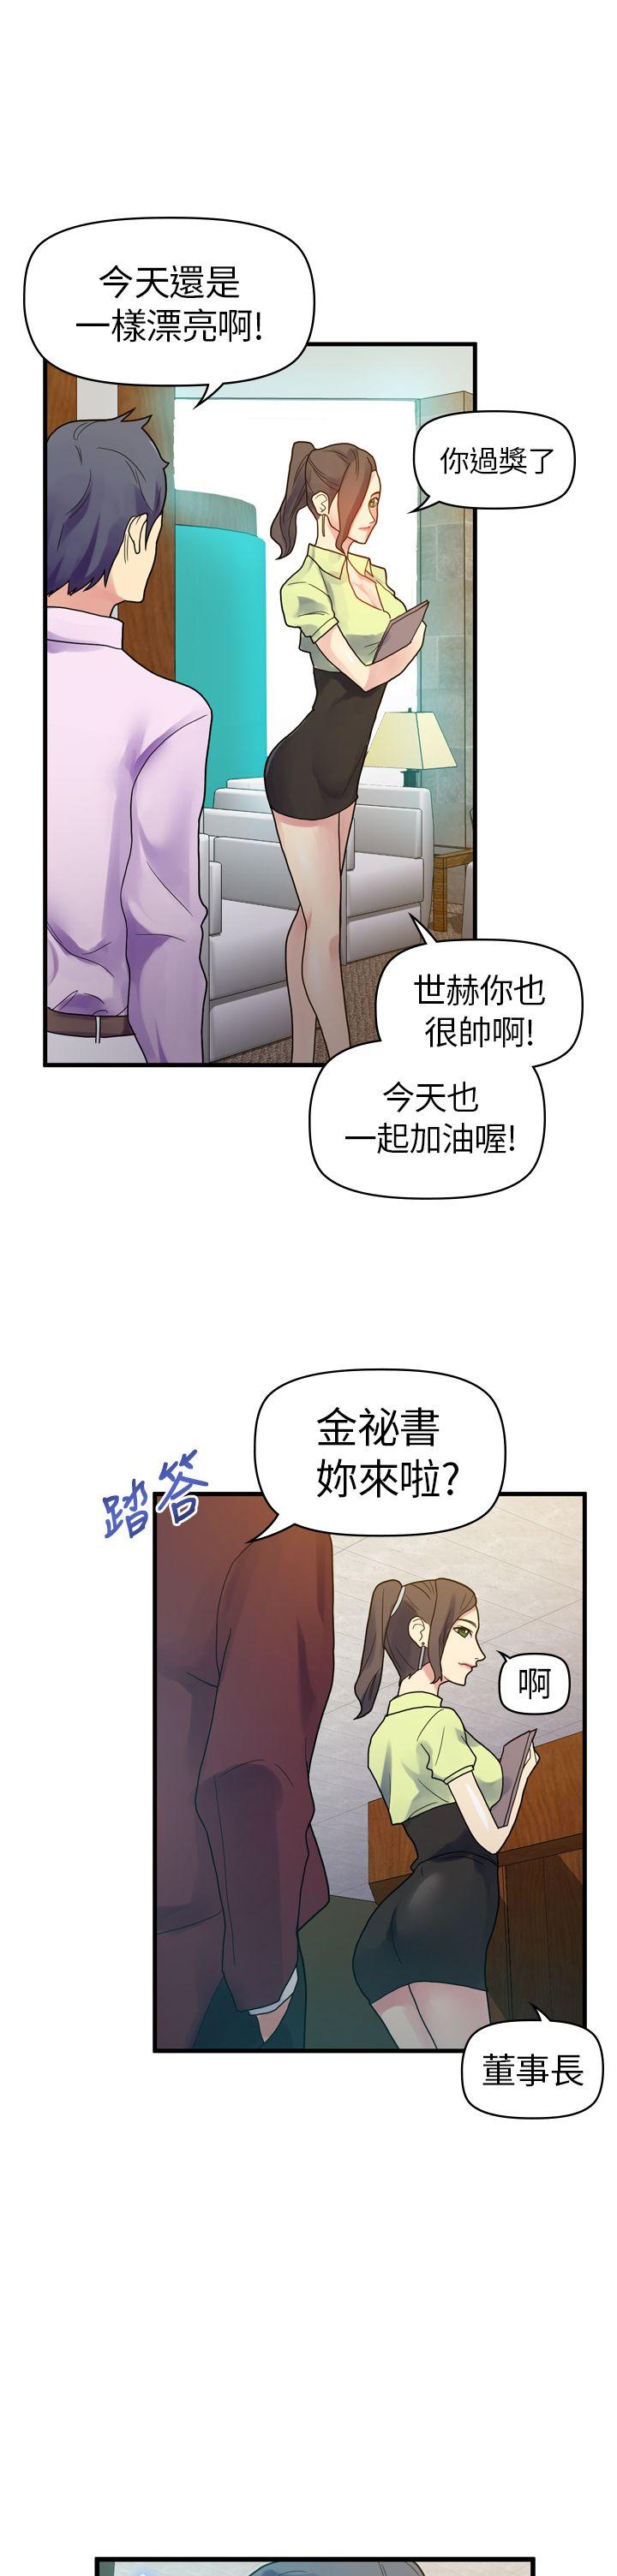 韩国污漫画 幻想中的她(完結) 第10话 5